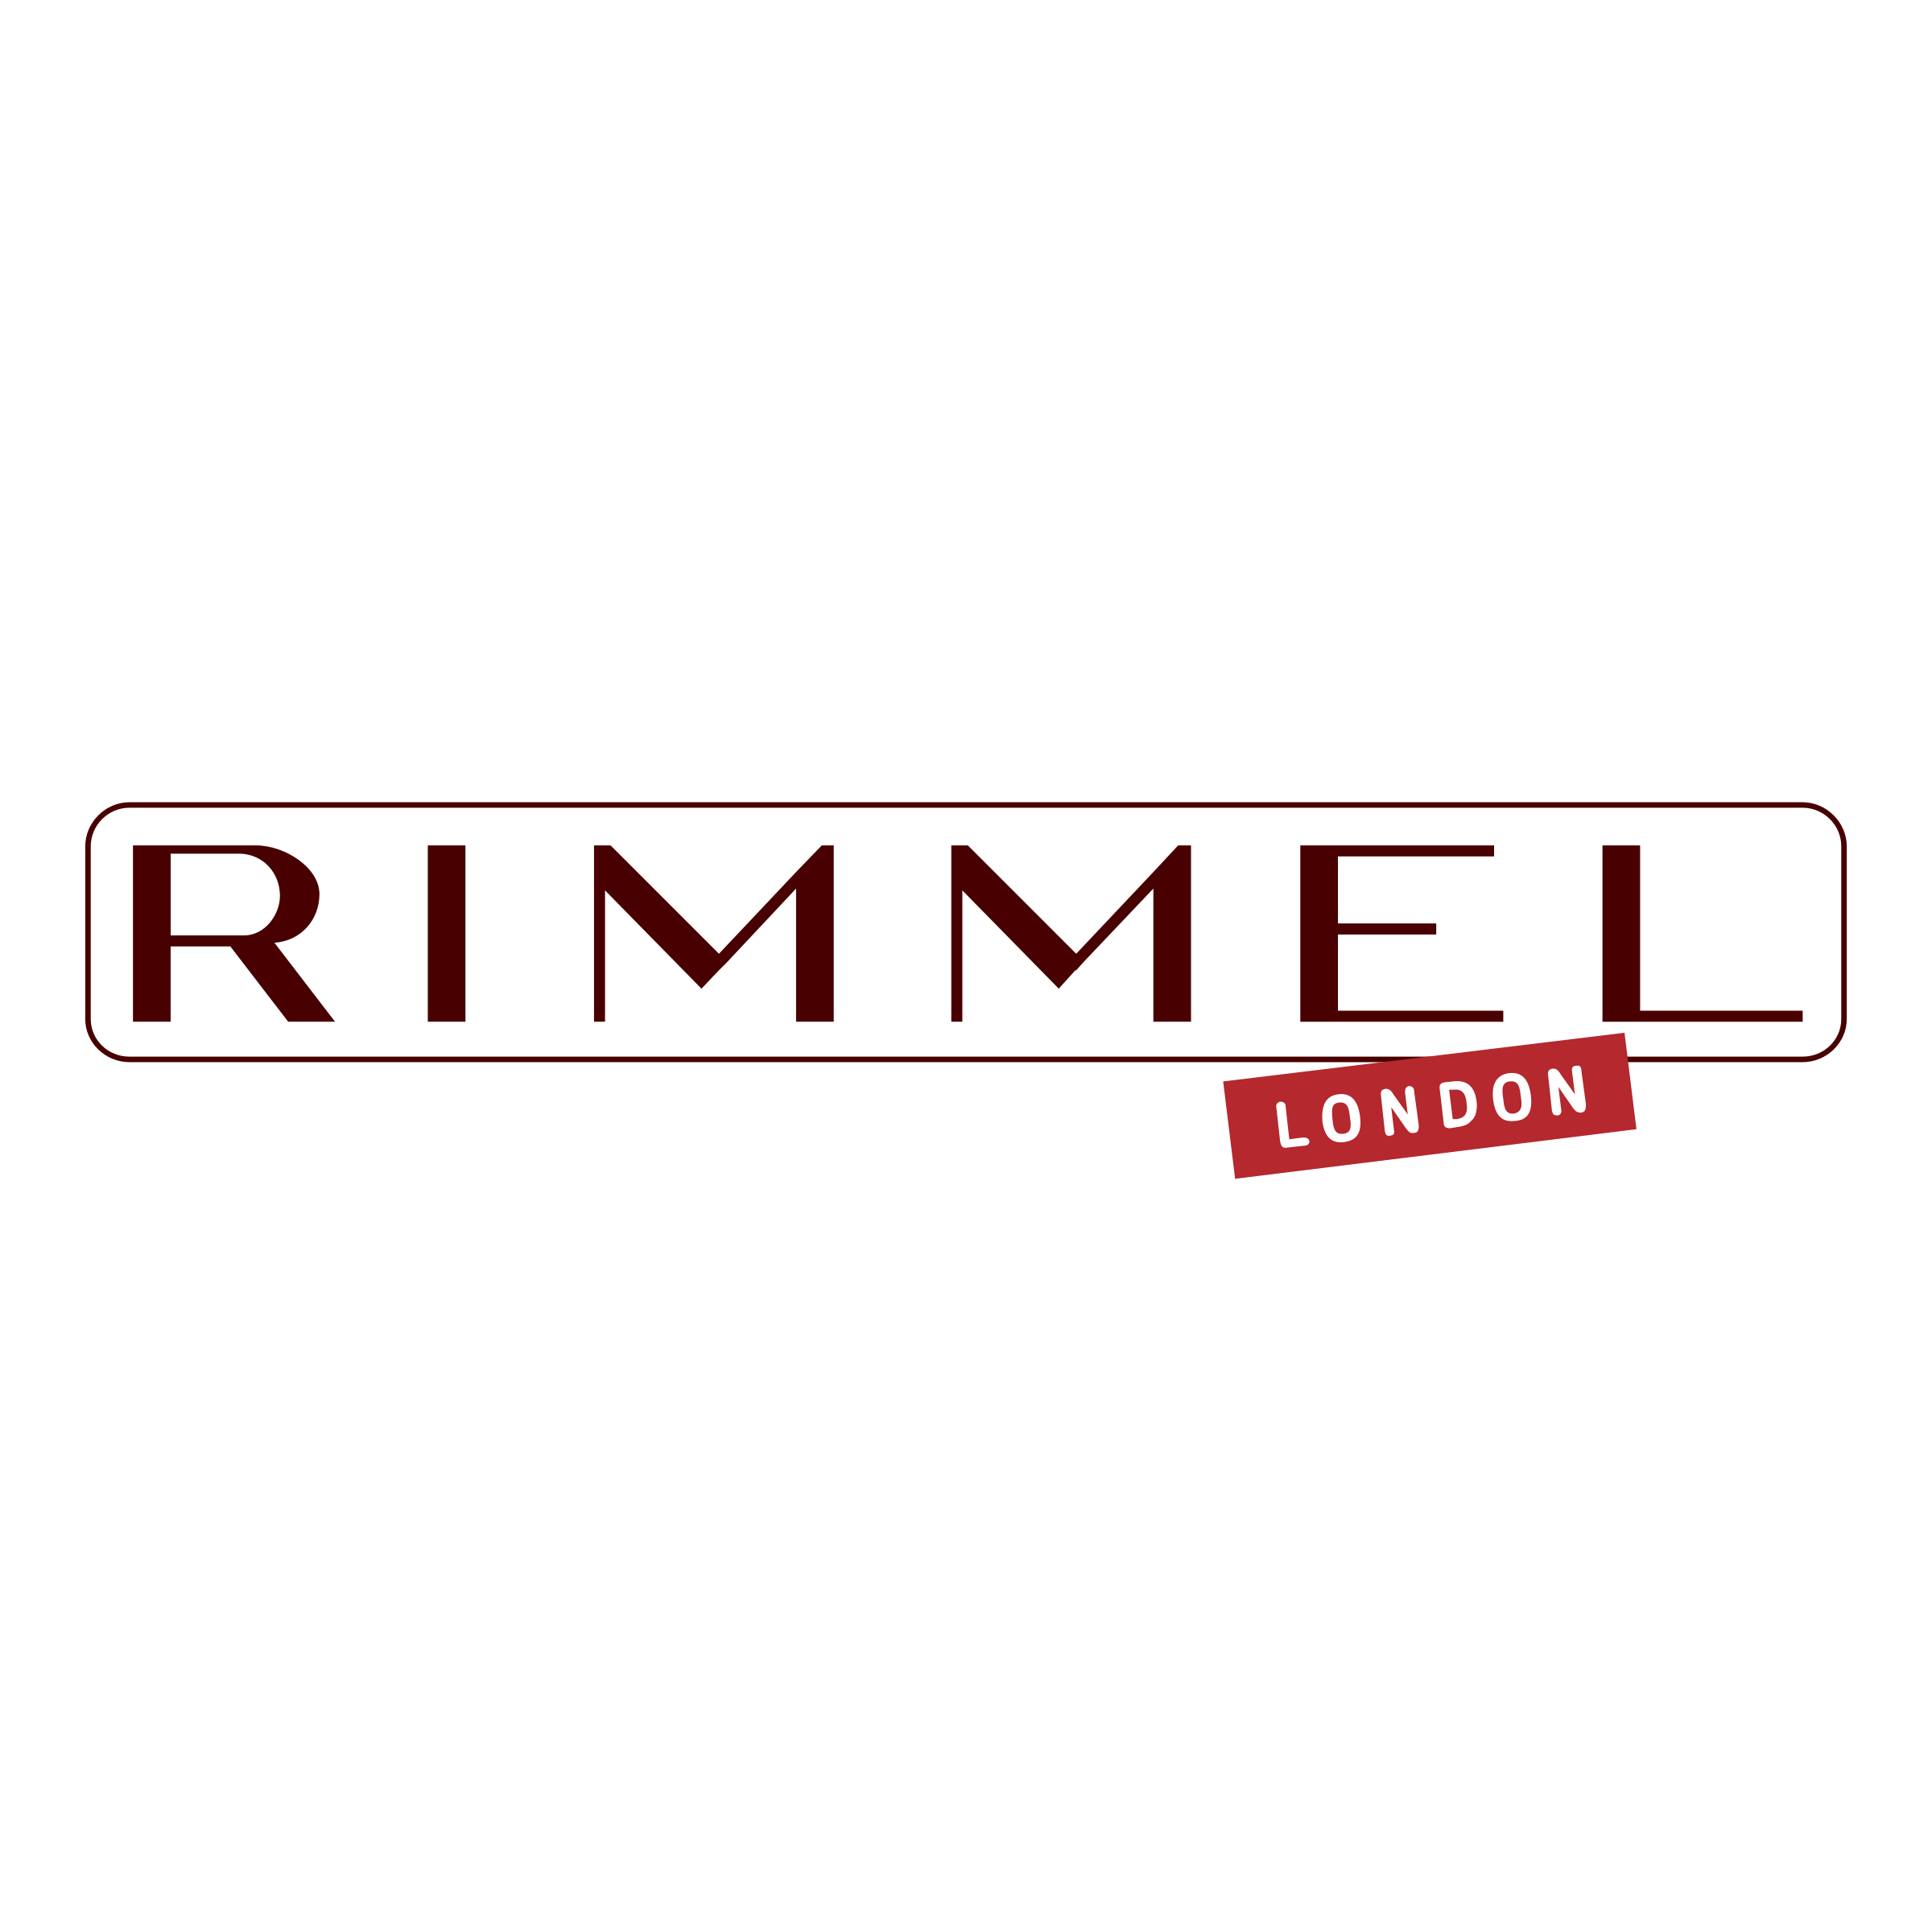 Rimmel Logo - Rimmel London Logo PNG Transparent & SVG Vector